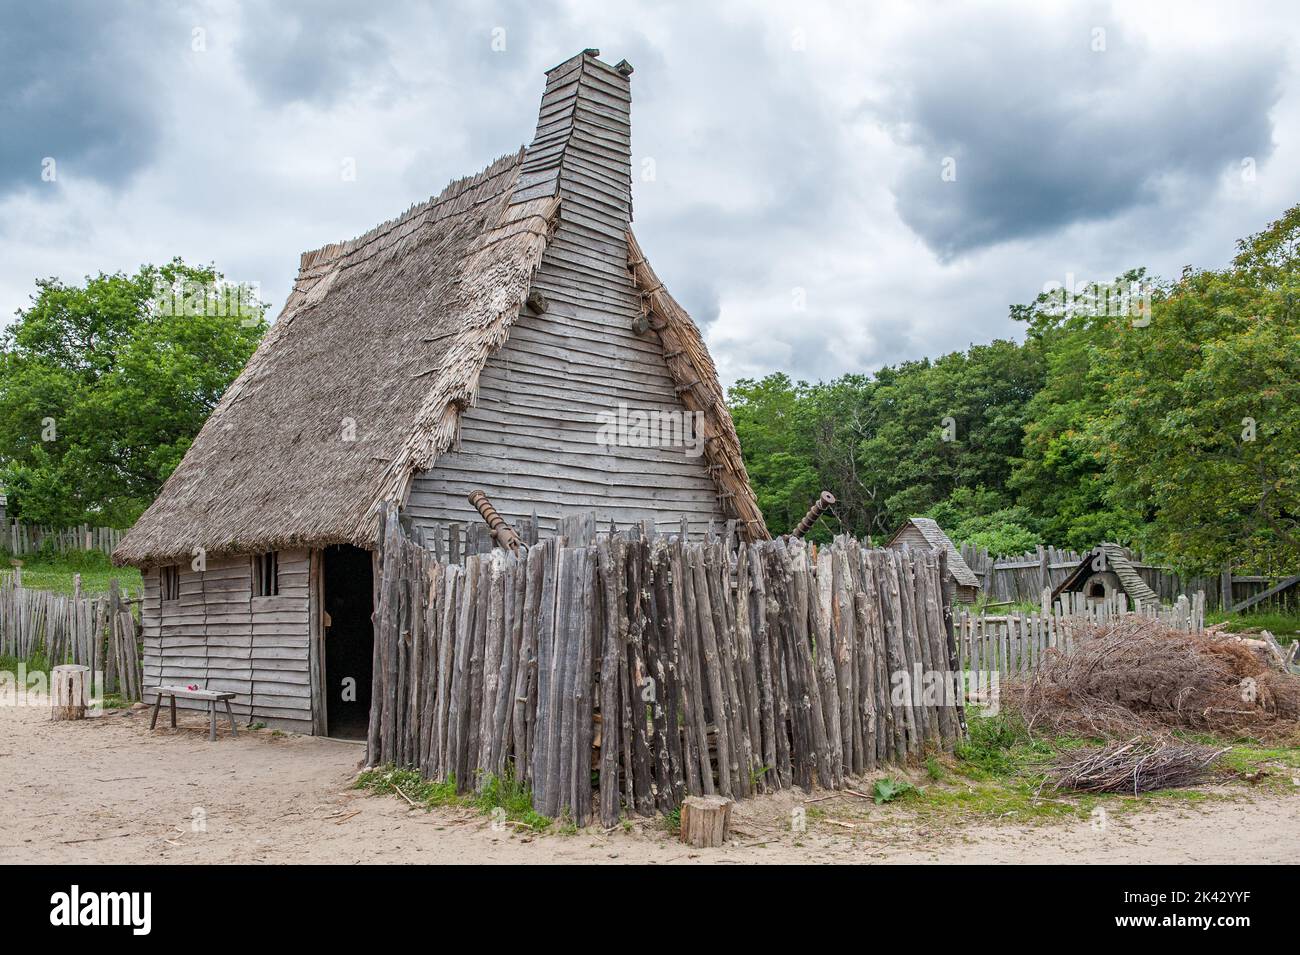 Plimoth Patuxet repliziert die ursprüngliche Siedlung der Pilger in der Plymouth Colony, wo die erste Danksagerei 1621 stattgefunden haben könnte. Stockfoto